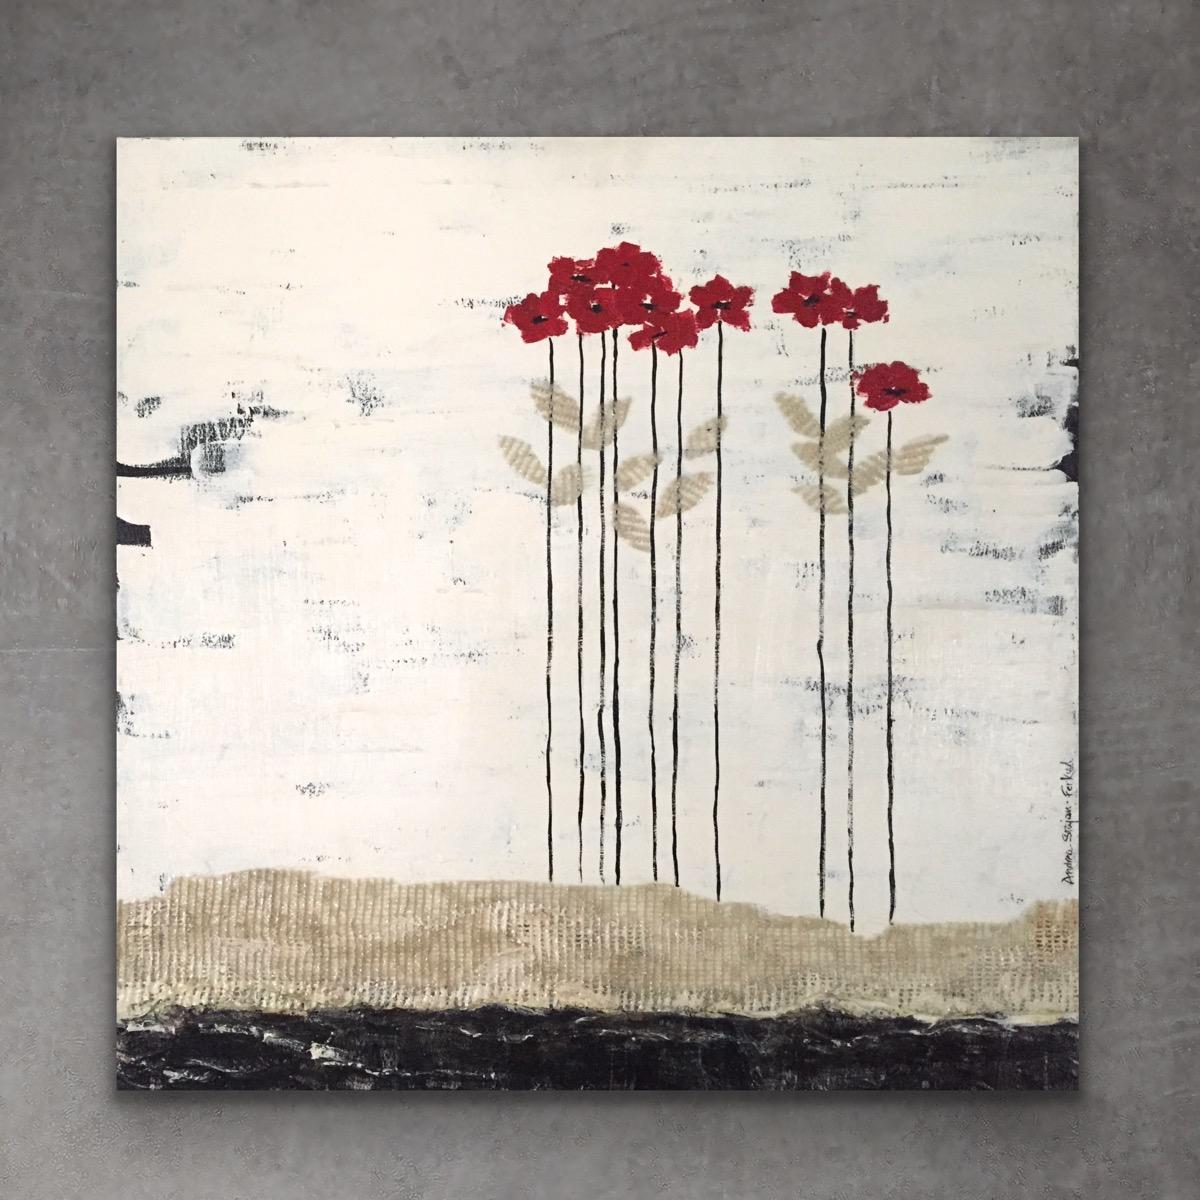 Rote Köpfe 1 (24 "x24", rot, weiß und schwarz geblümt, Landschaft, Malerei)